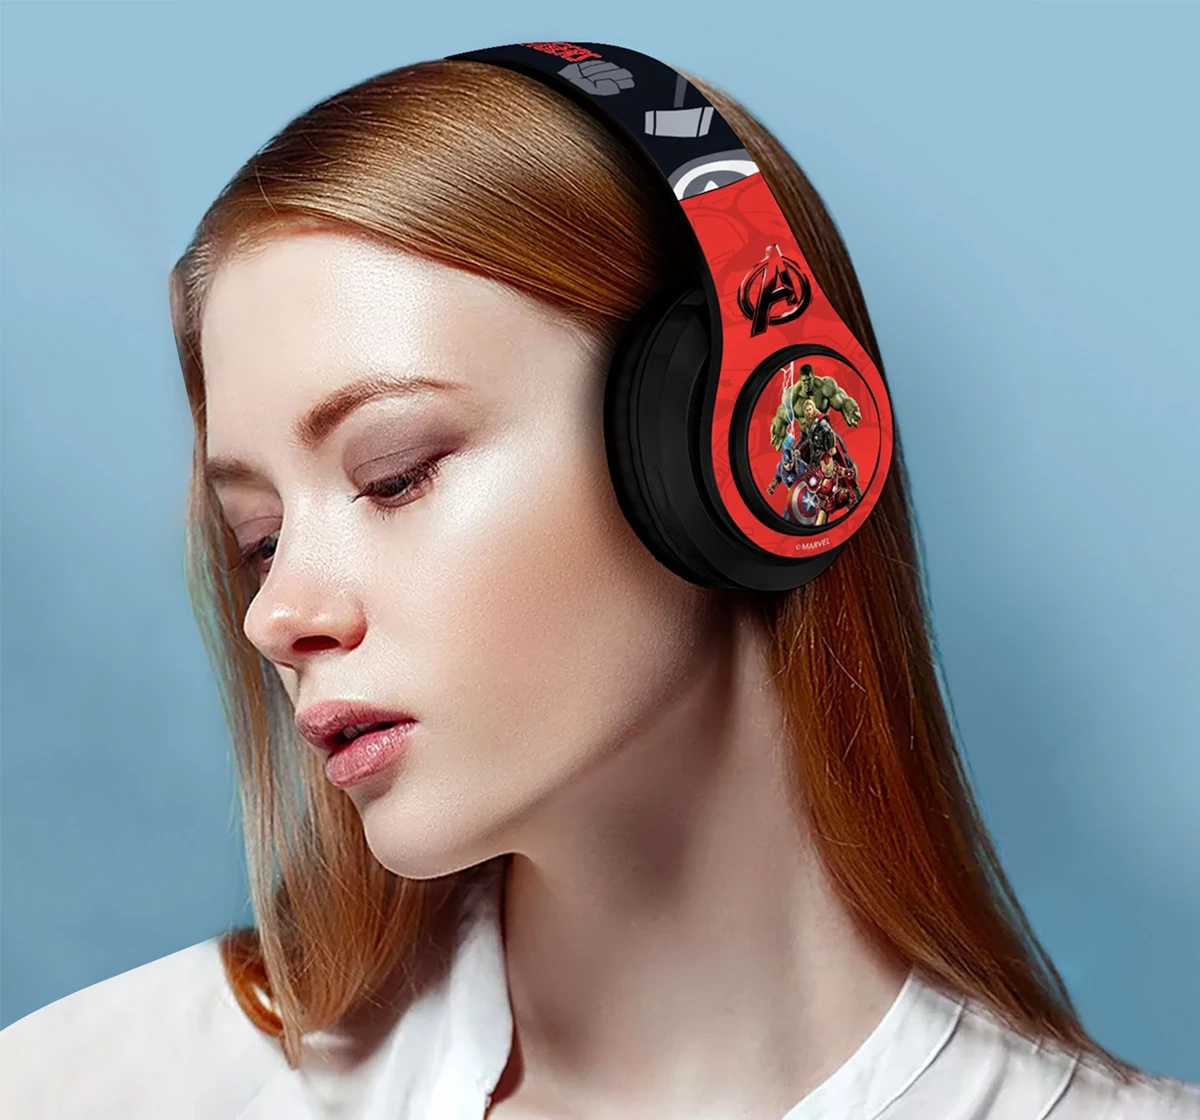 Macmerise Marvel Avengers Decibel Headphones for Kids, Kids for 5Y+, Blue